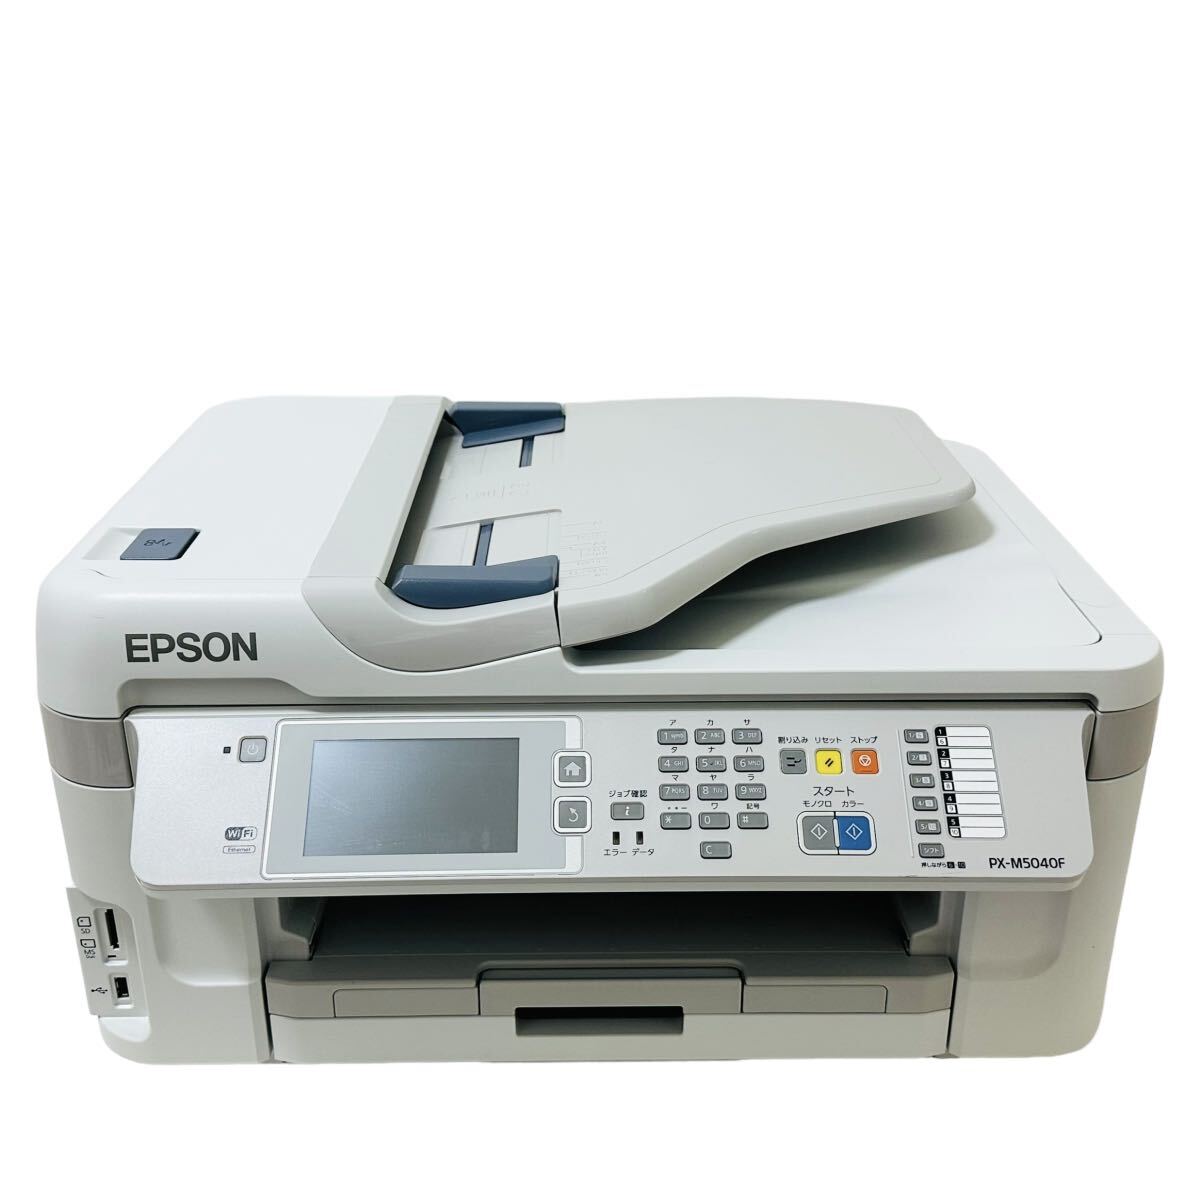 ★ 人気商品 ★ EPSON エプソン インクジェット複合機 PX-M5040F インクジェット プリンター A3 複合機 ビジネスプリンター カセット A4の画像2